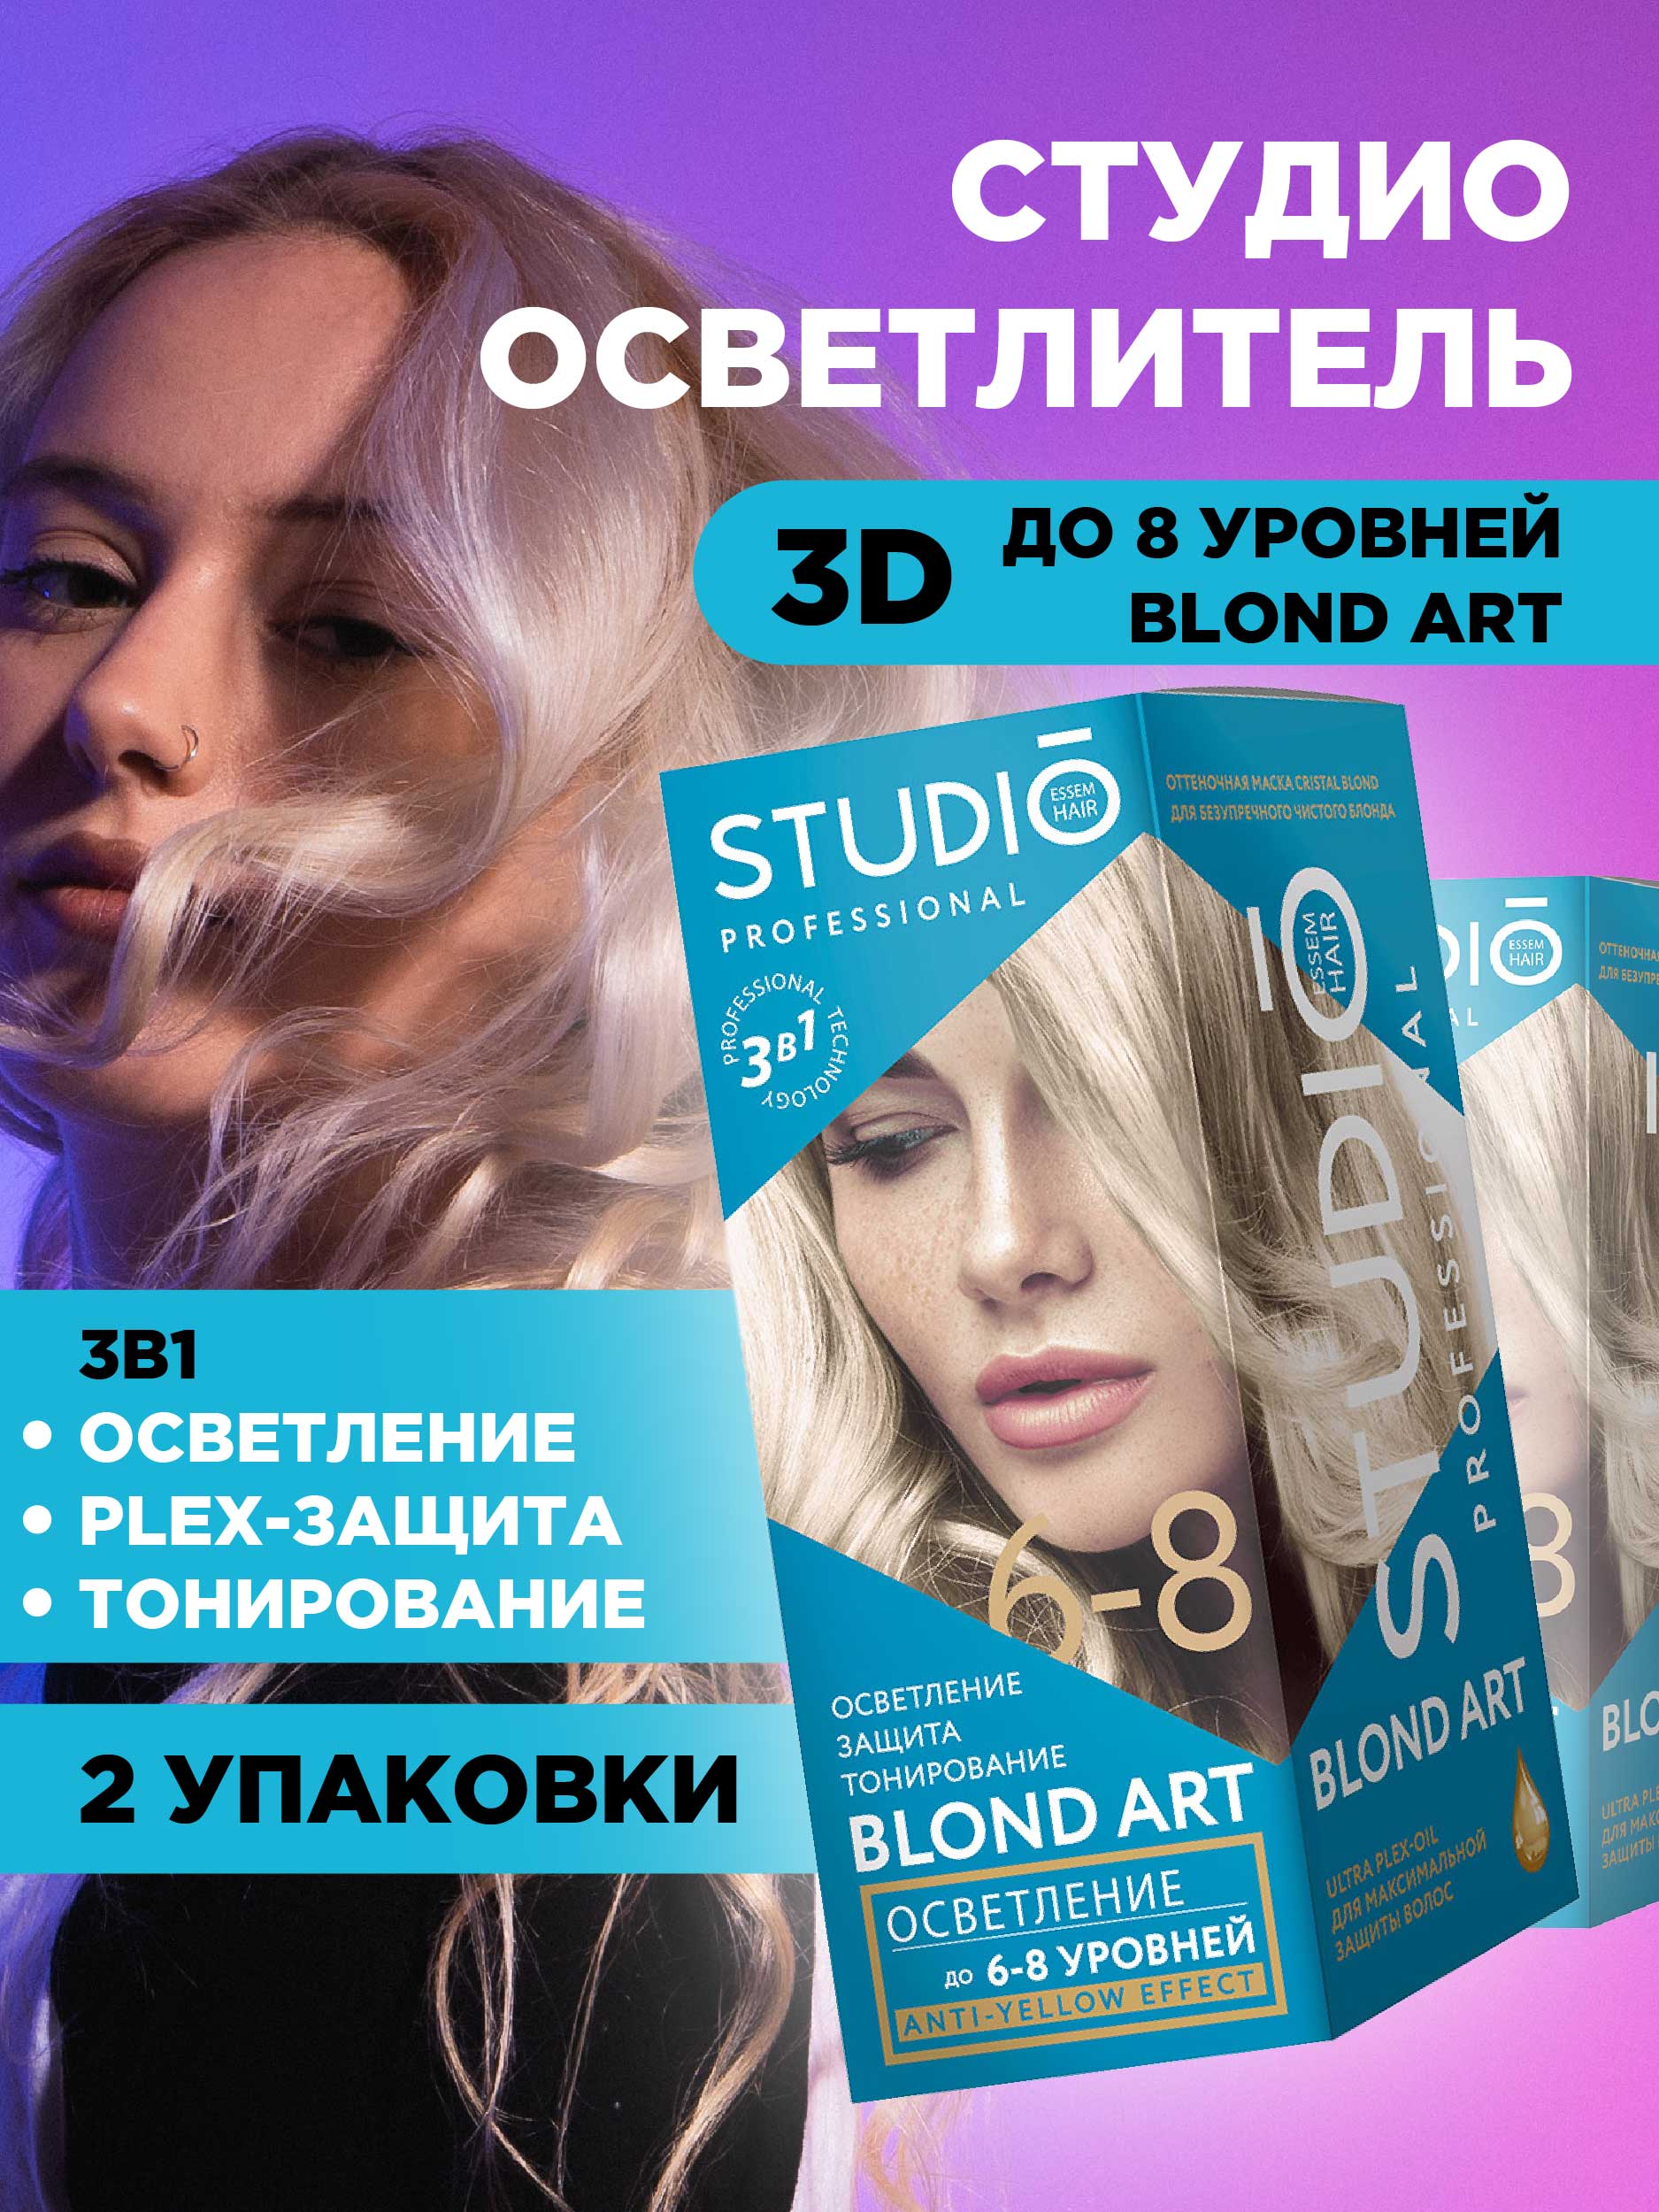 Осветлитель для волос Studio Professional 3D до 8 уровней 2*25гр 2шт